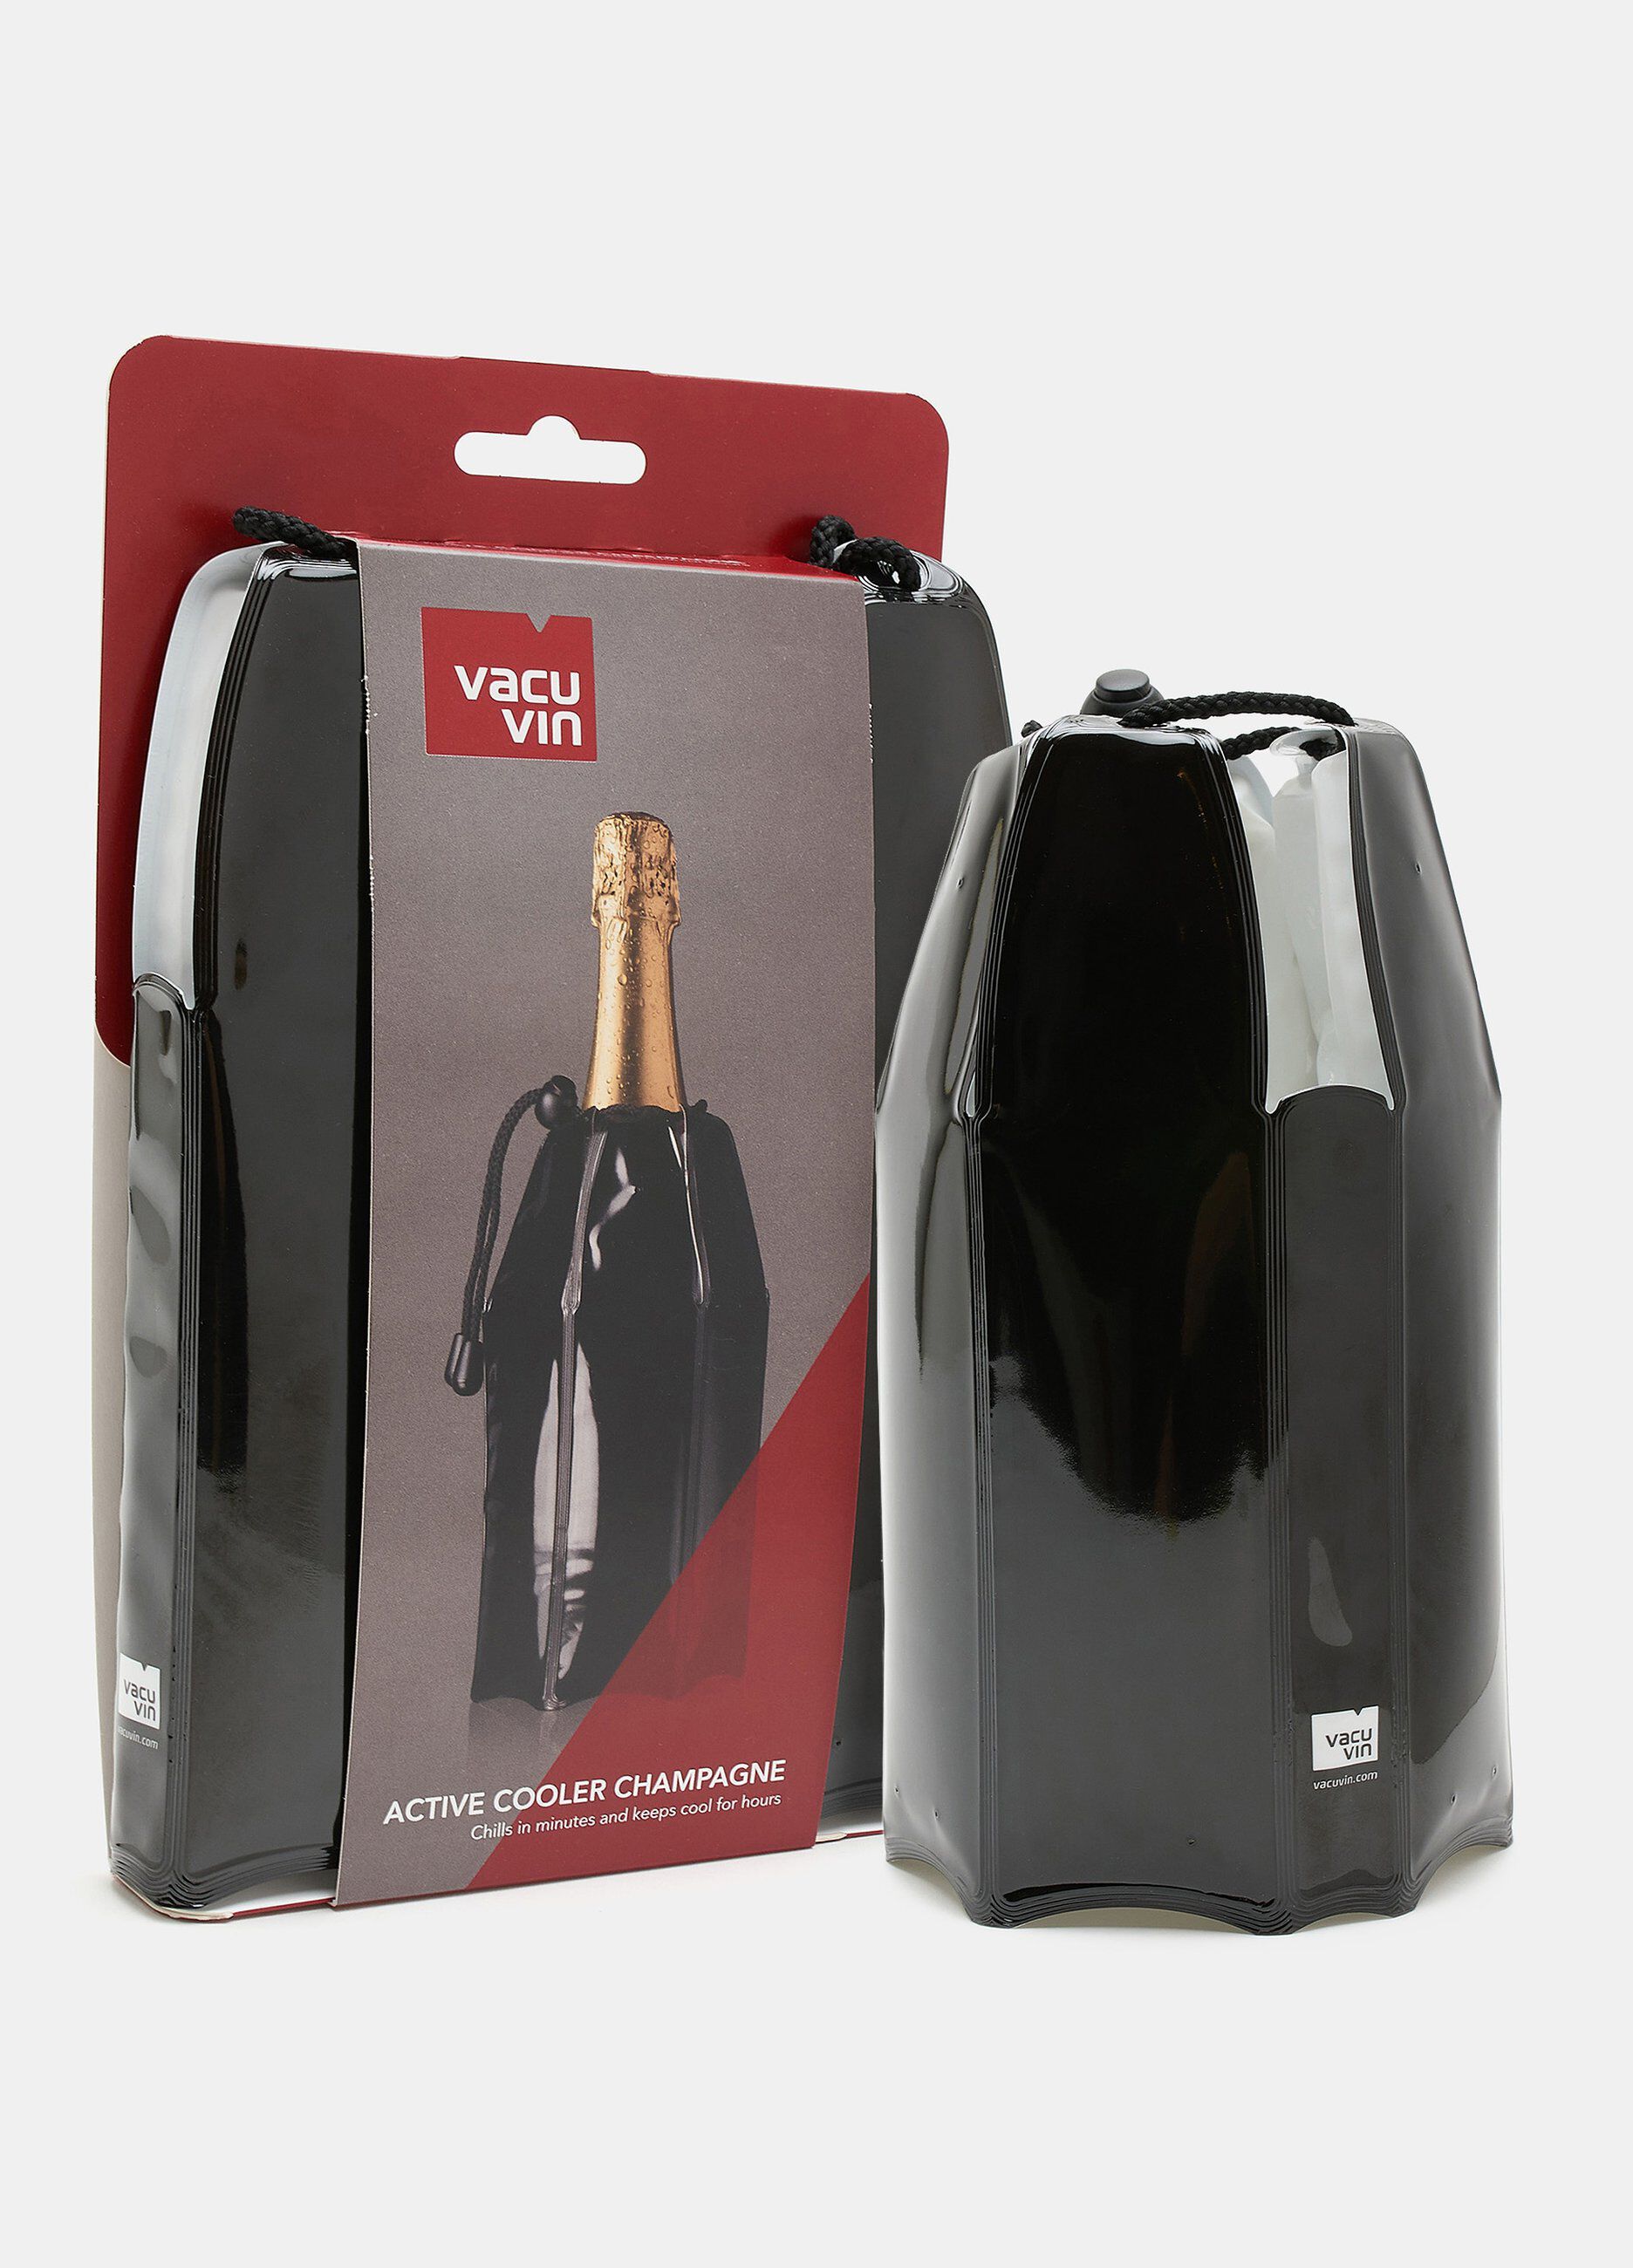 Giacchetta wine cooler per vino